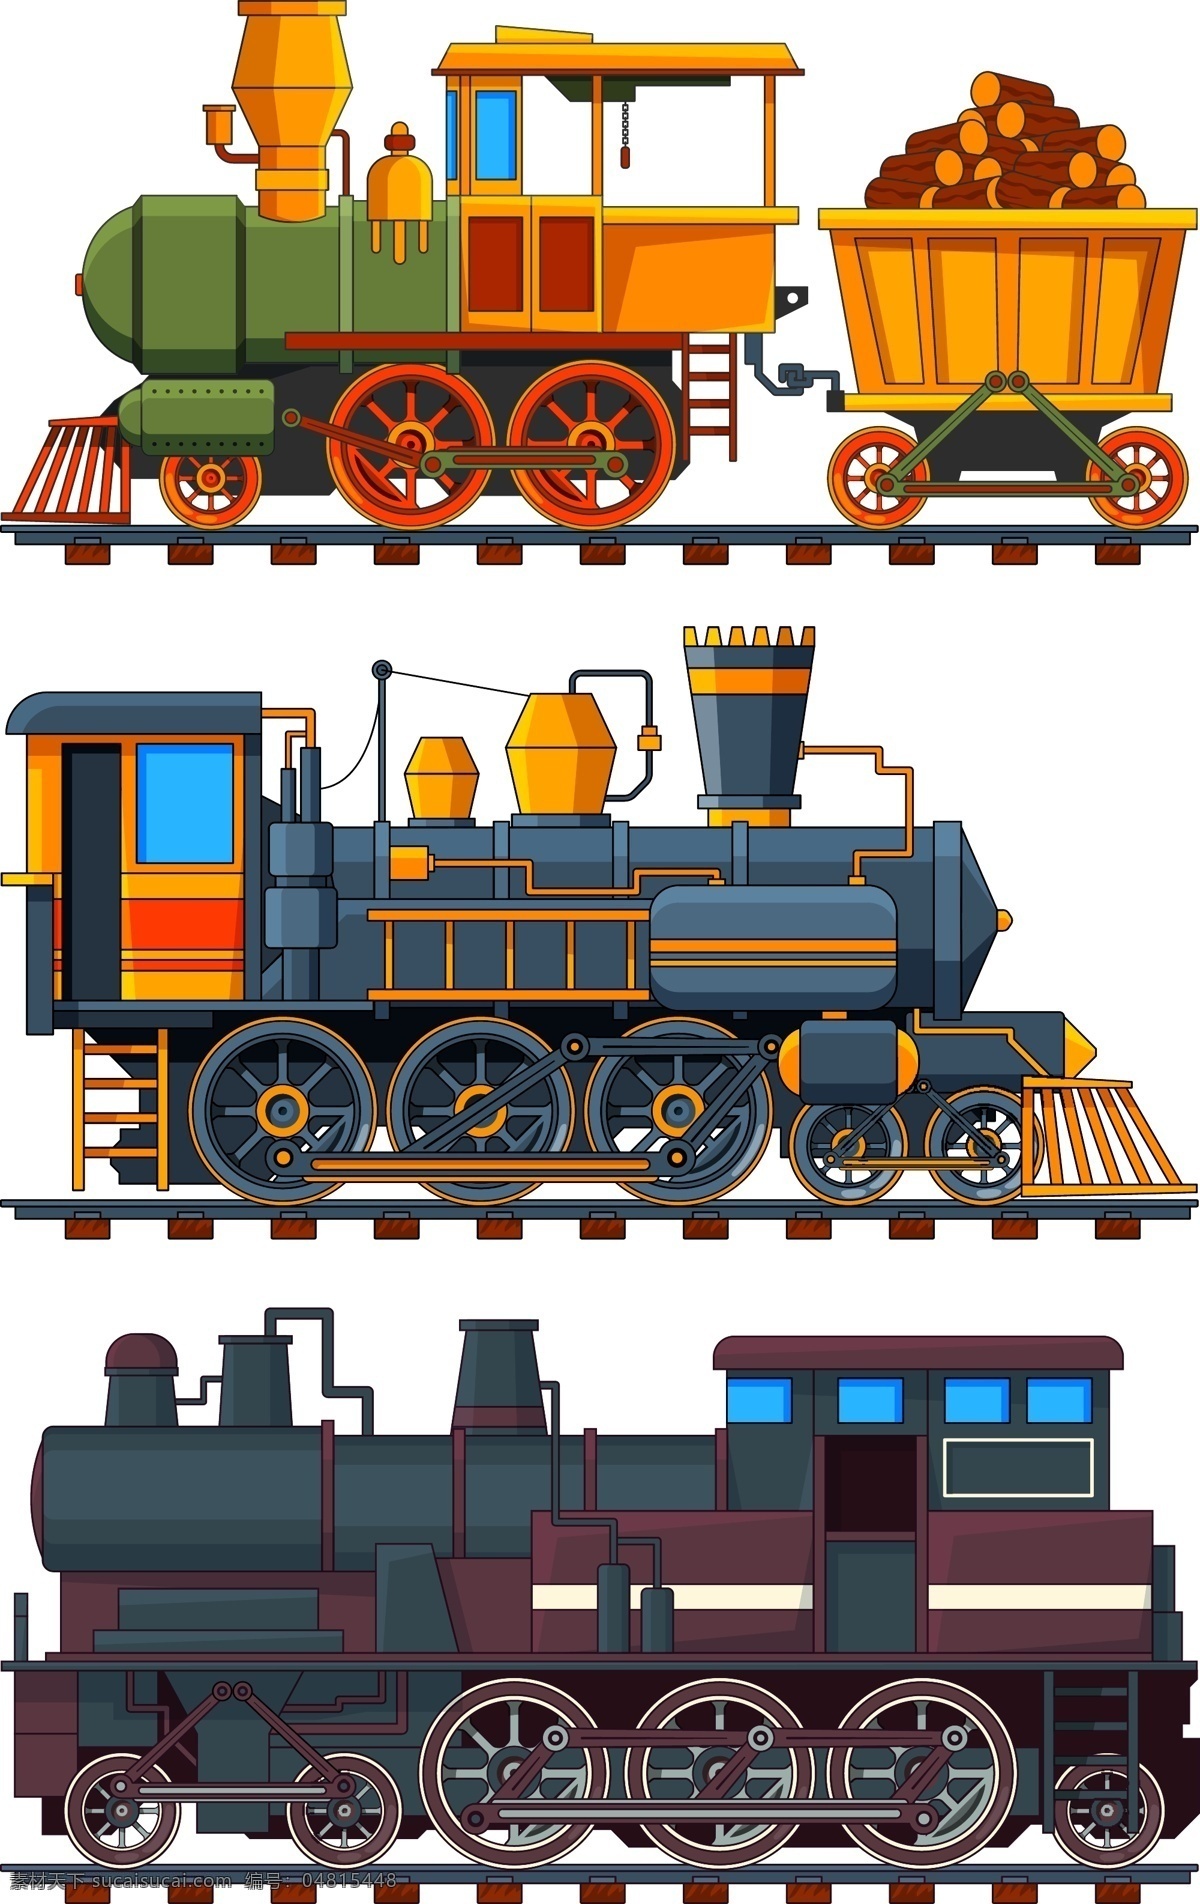 卡通火车 手绘火车 矢量火车 火车插画 火车玩具 玩具火车 儿童玩具 运输工具 复古火车 扁平化火车 卡通设计